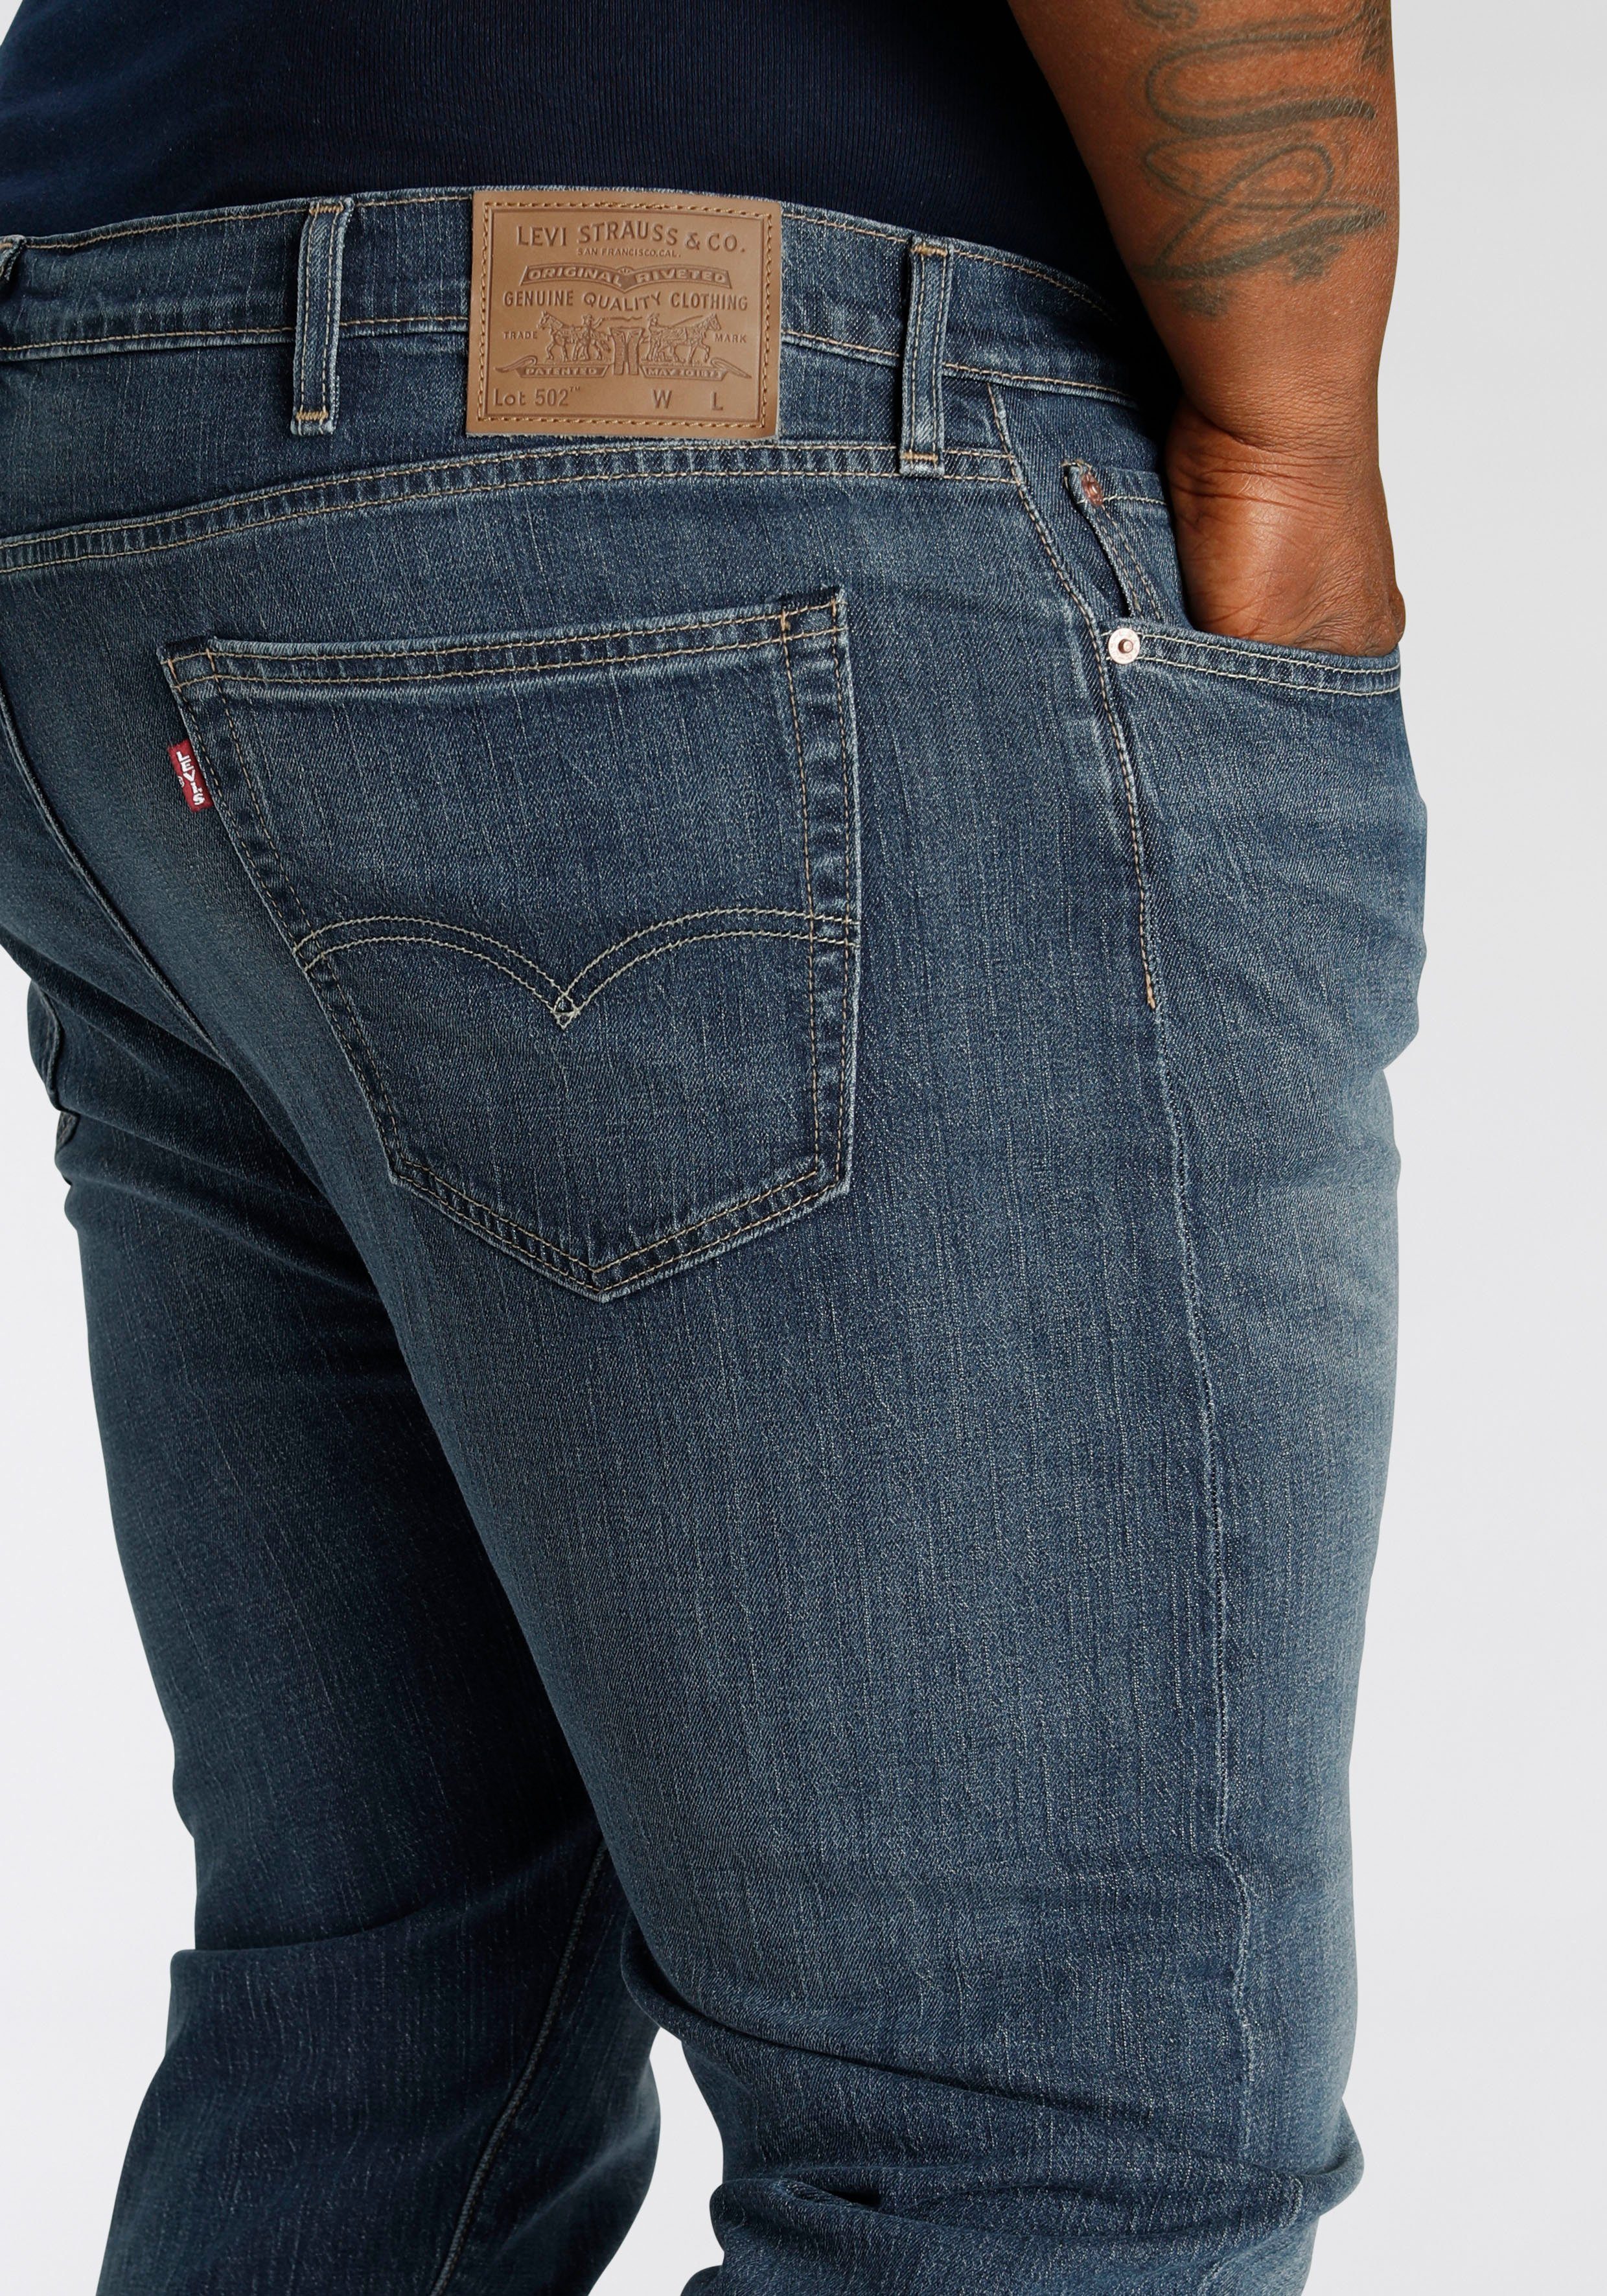 einen TAPER MEDIUM INDIGO Look B&T Tapered-fit-Jeans Plus für WORN Levi's® lässigen 502 IN